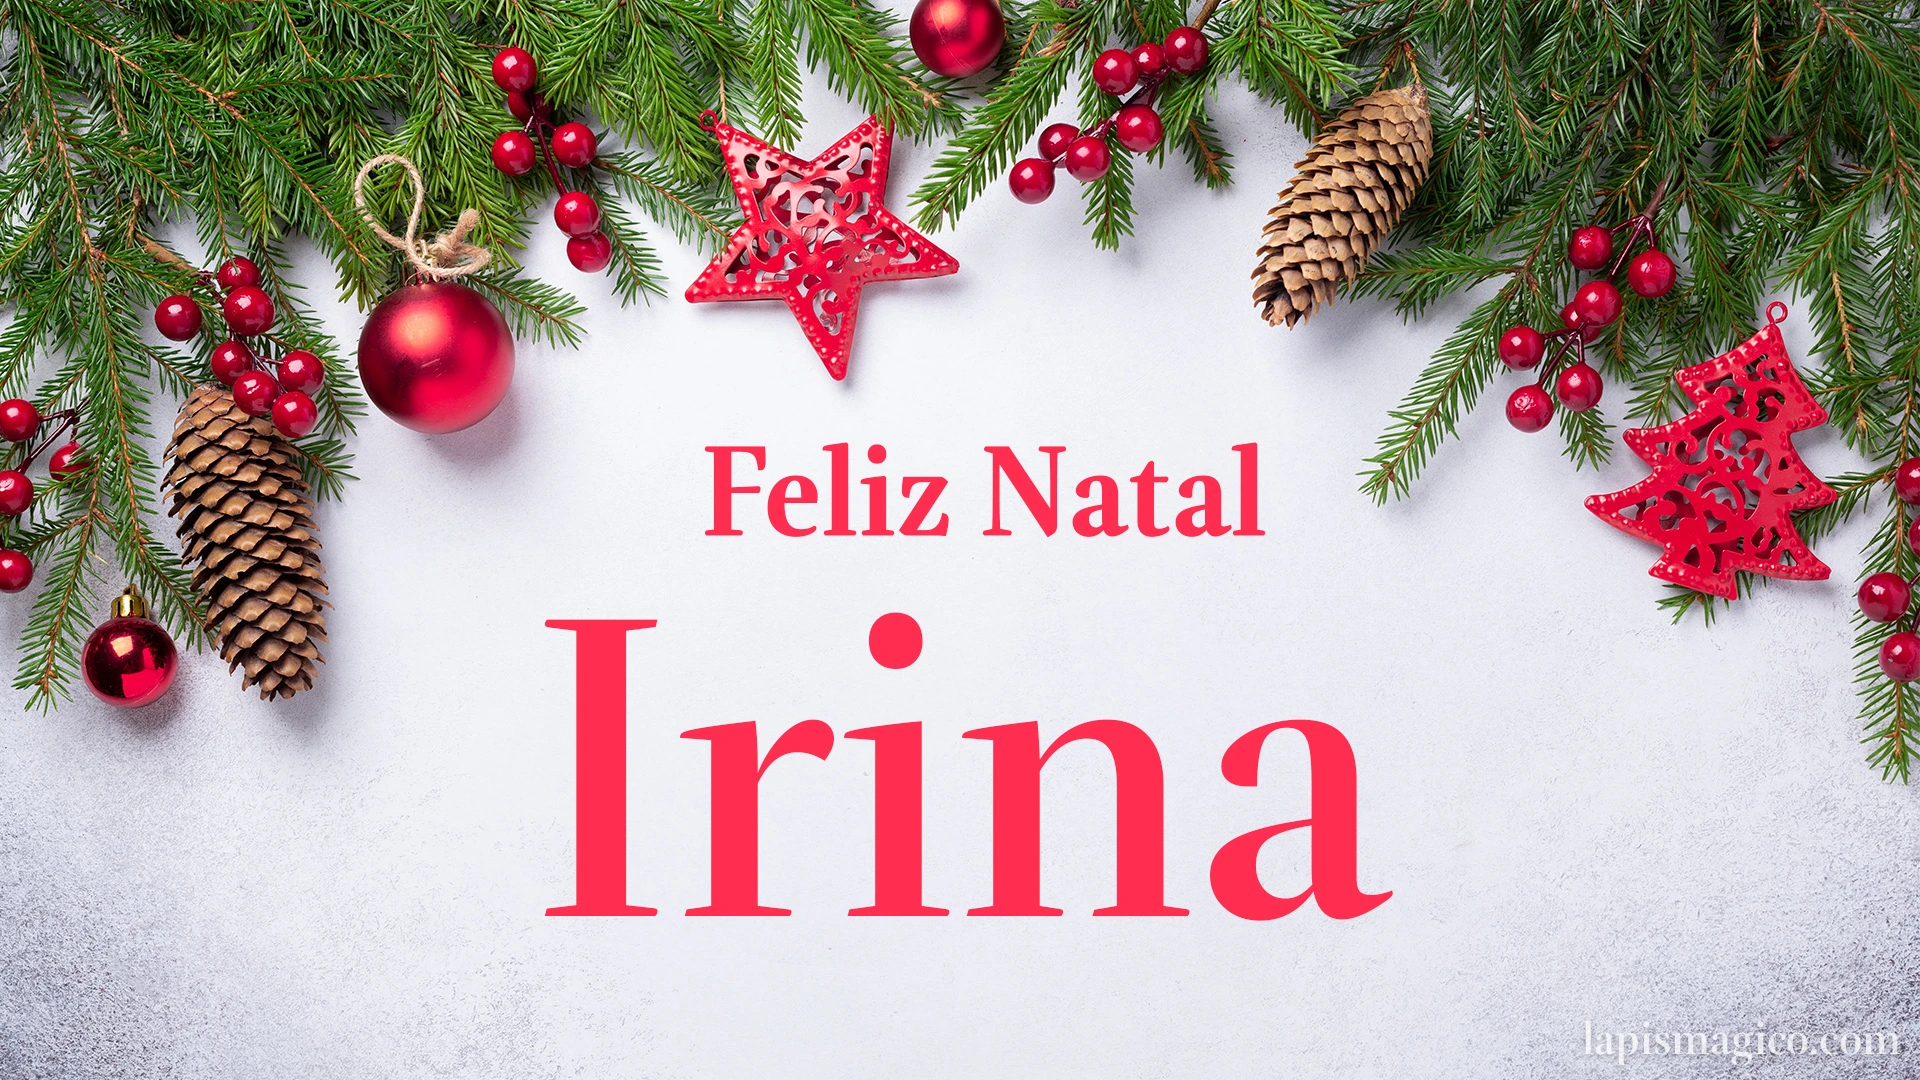 Oh Irina, cinco postais de Feliz Natal Postal com o teu nome